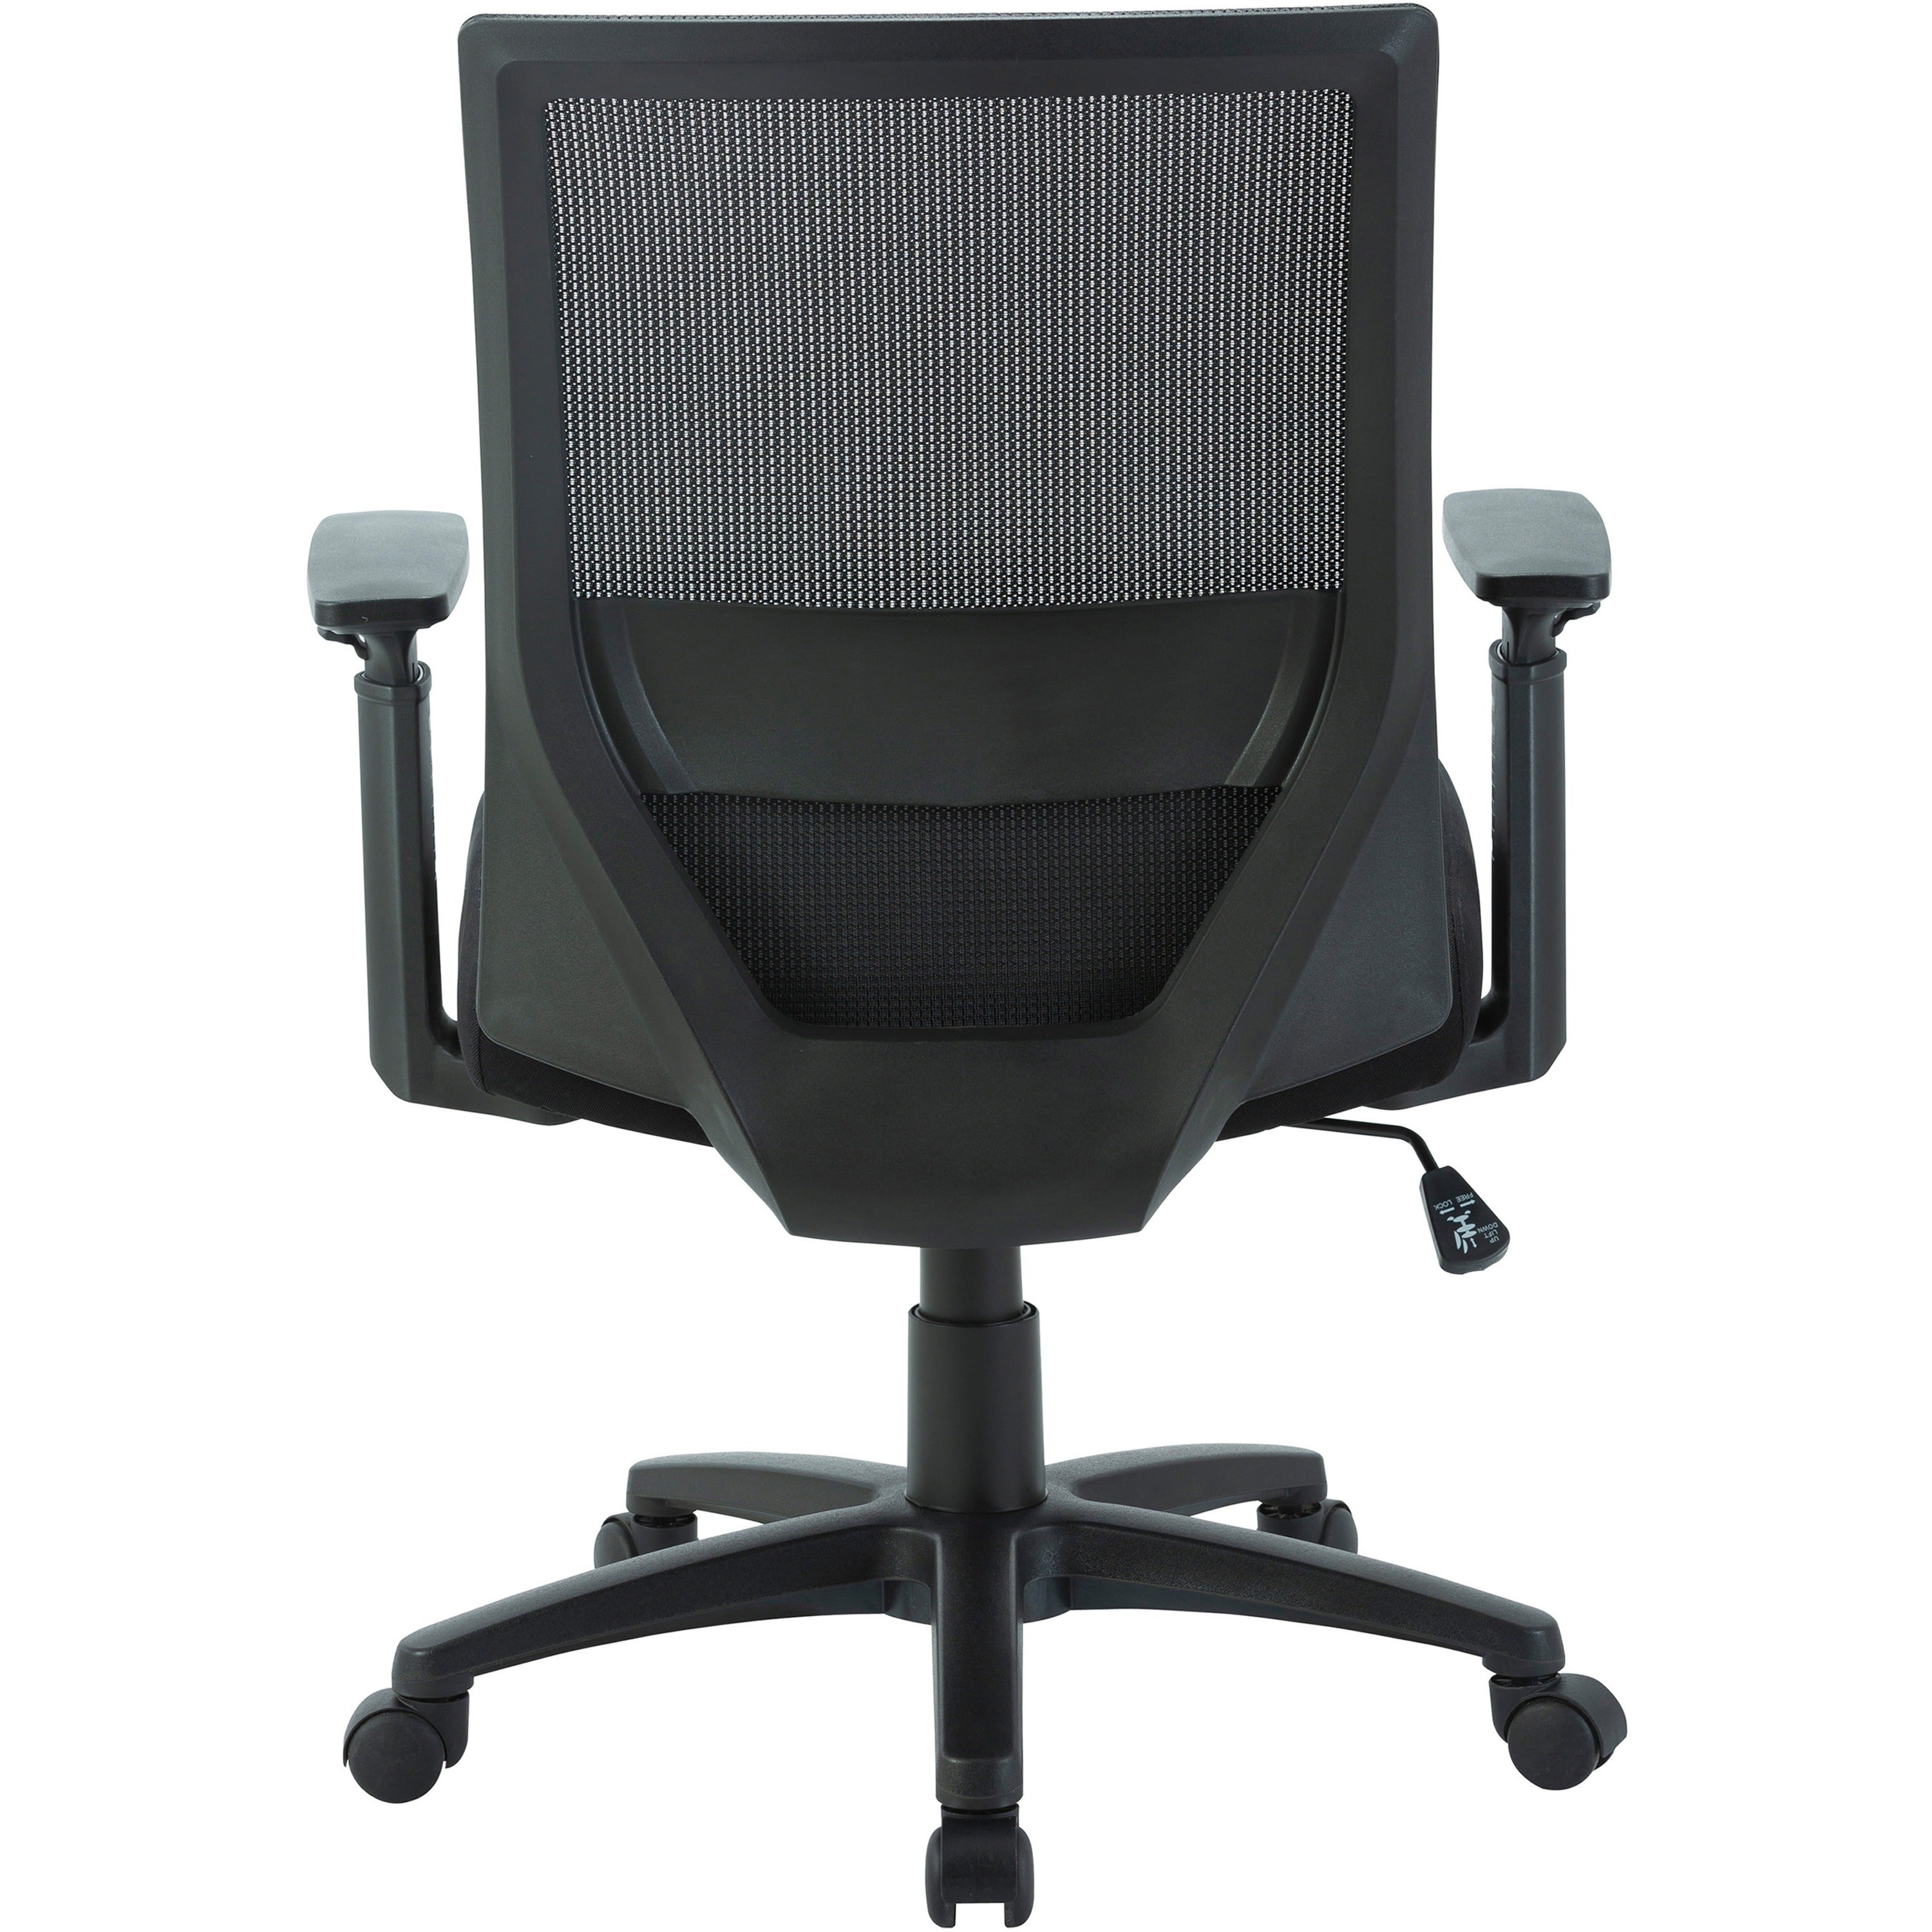 lorell-soho-mesh-mid-back-task-chair-gray-fabric-seat-gray-fabric-back-mid-back-5-star-base-black-armrest-1-each_llr41840 - 5